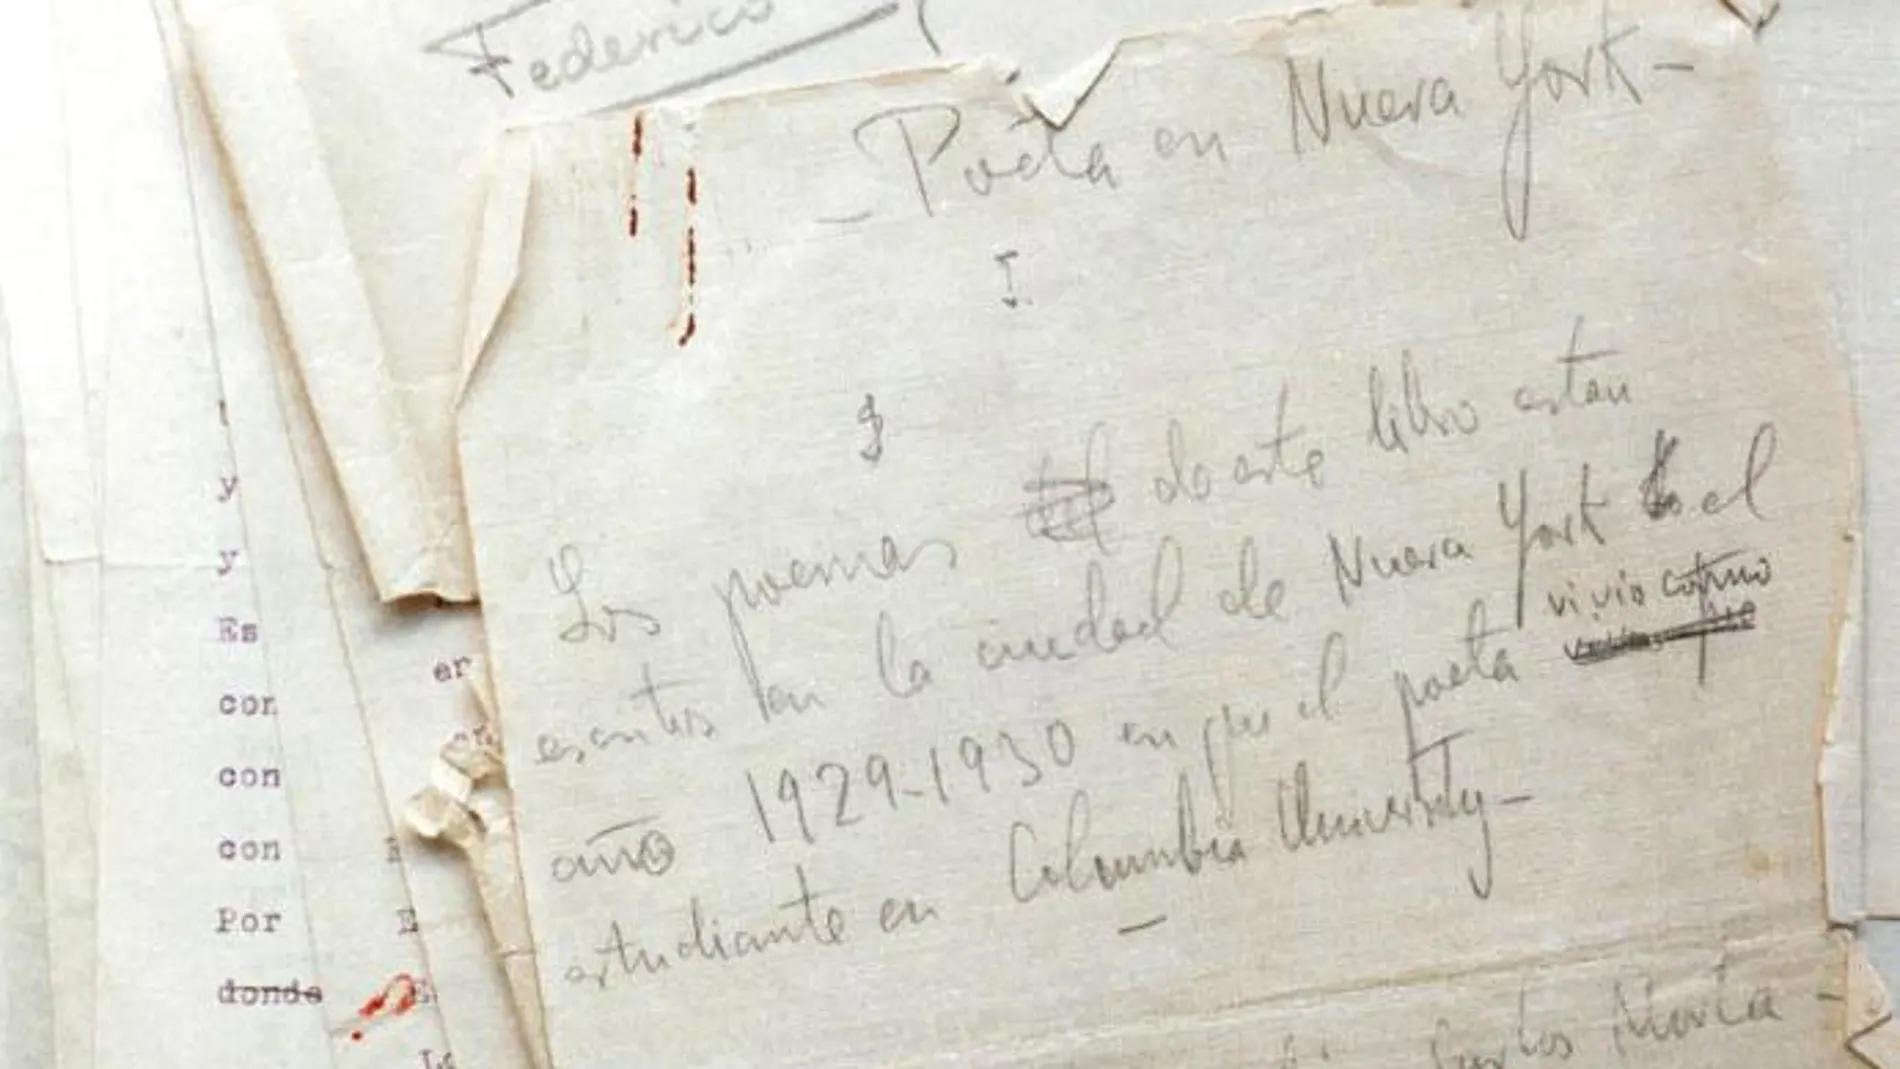 La versión original manuscrita y a máquina del famoso libro de poemas "Poeta en Nueva York", de Federico García Lorca